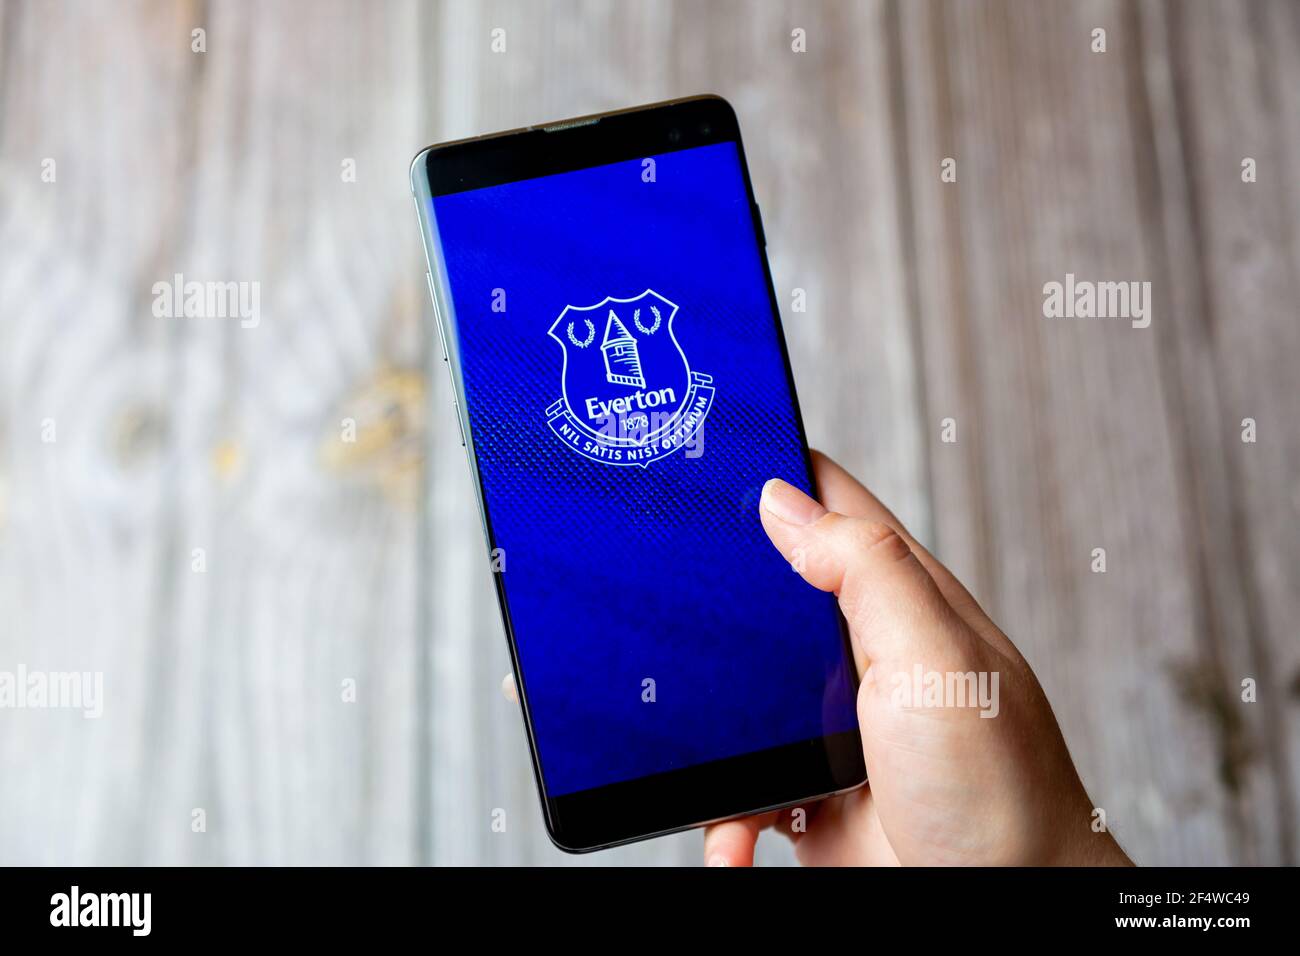 Un téléphone mobile ou mobile tenu dans un Main avec l'application Everton football Club ouverte à l'écran Banque D'Images